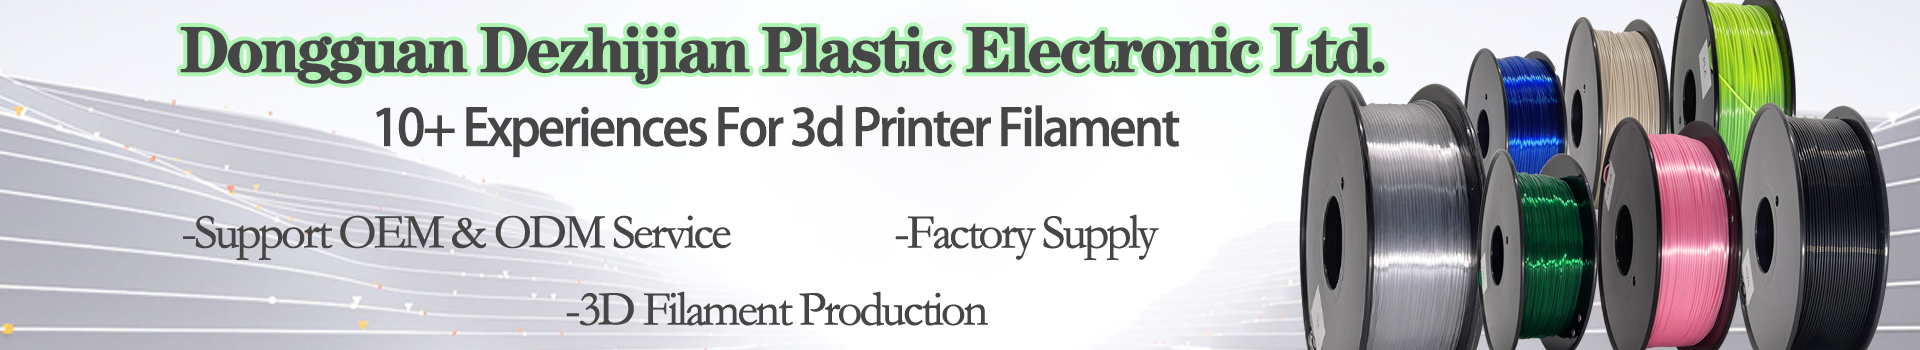 Filamento de filamento PLA Filamento de doble color, 1,75 mm 3D Filament, Filamento de impresora 3D